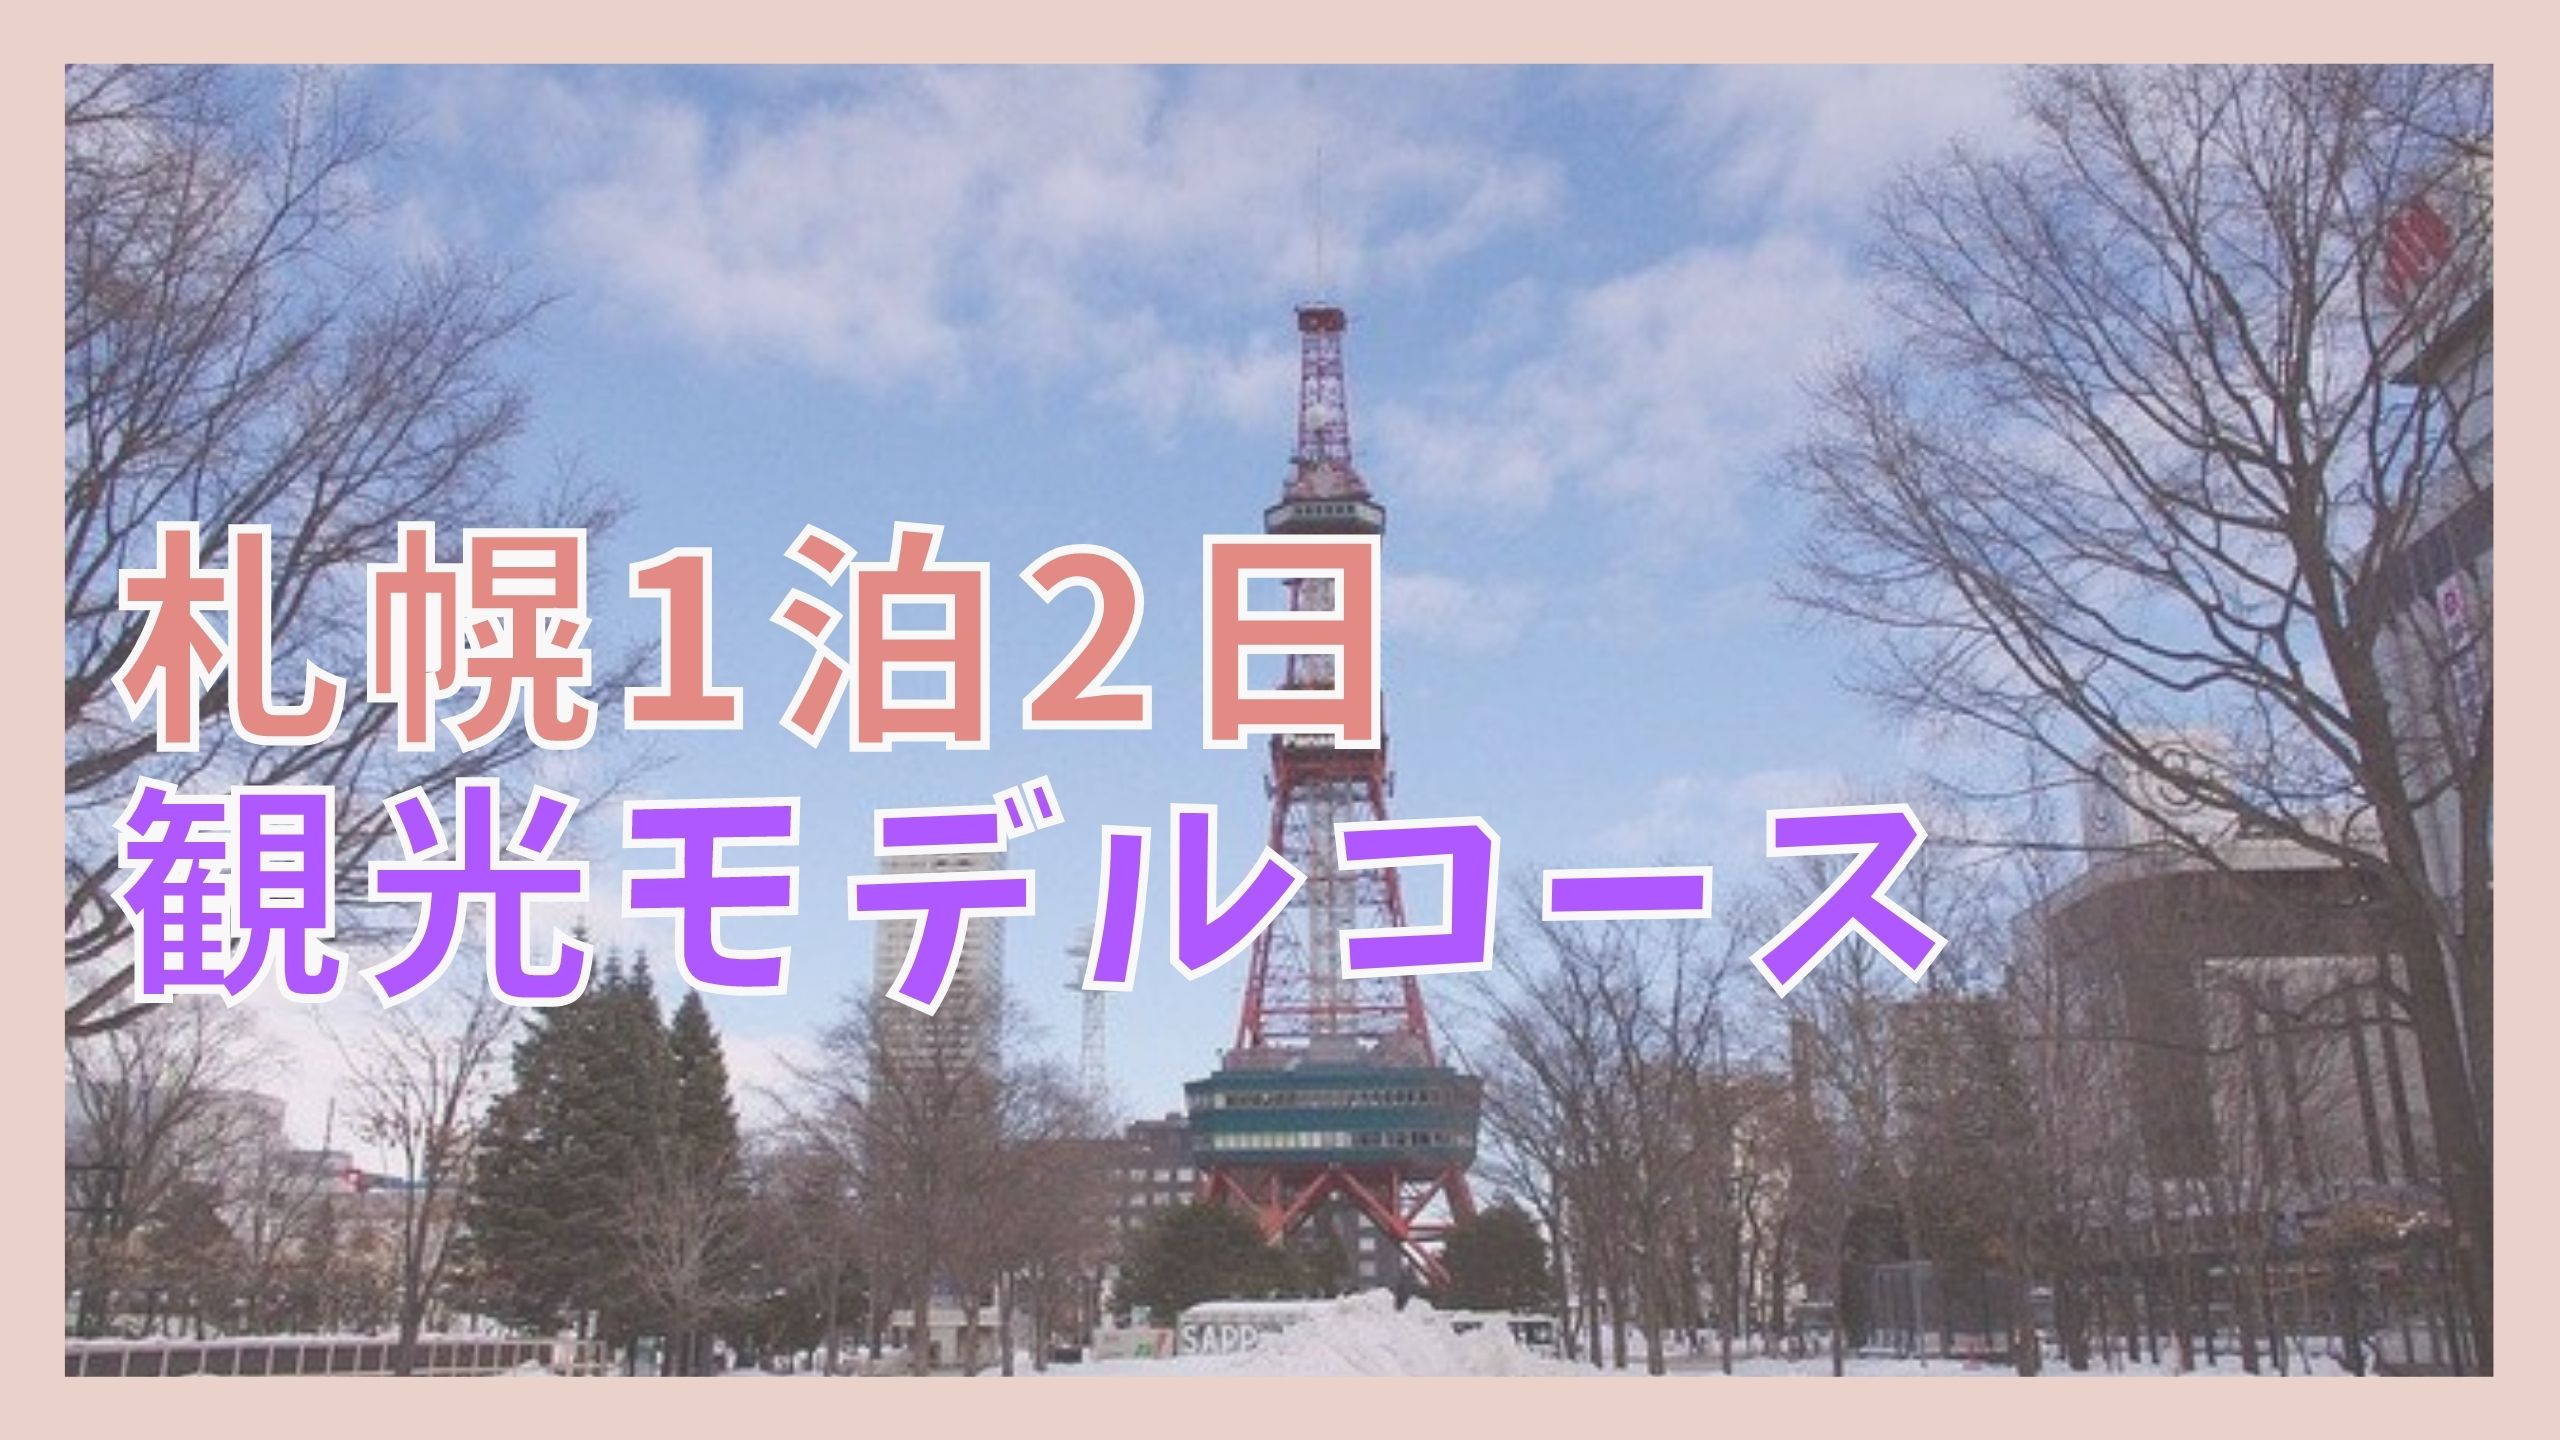 札幌観光モデルコース 1泊2日で巡る7つの観光名所 ジャパンワンダラー